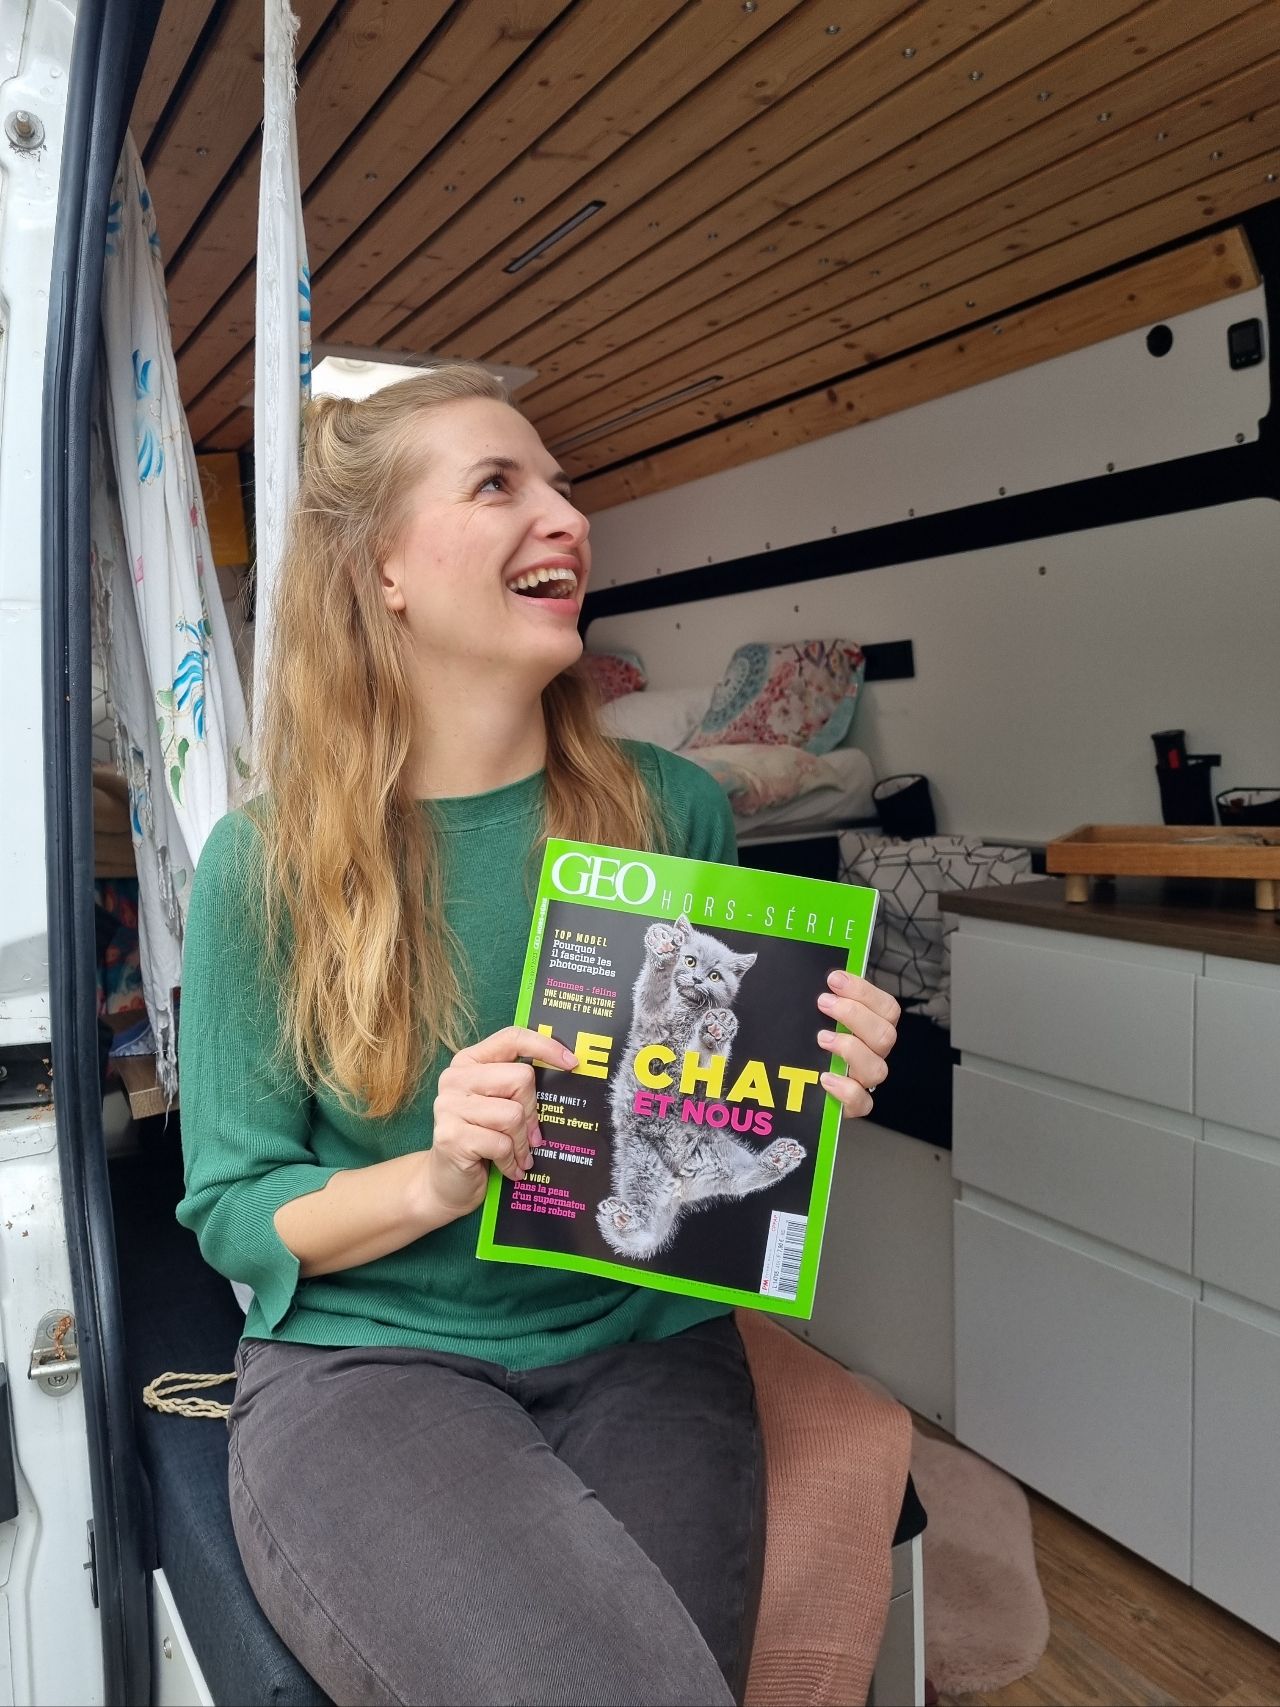 GEO Magazin zum Thema „Reisen mit Katze“ (Campervan, Workation)